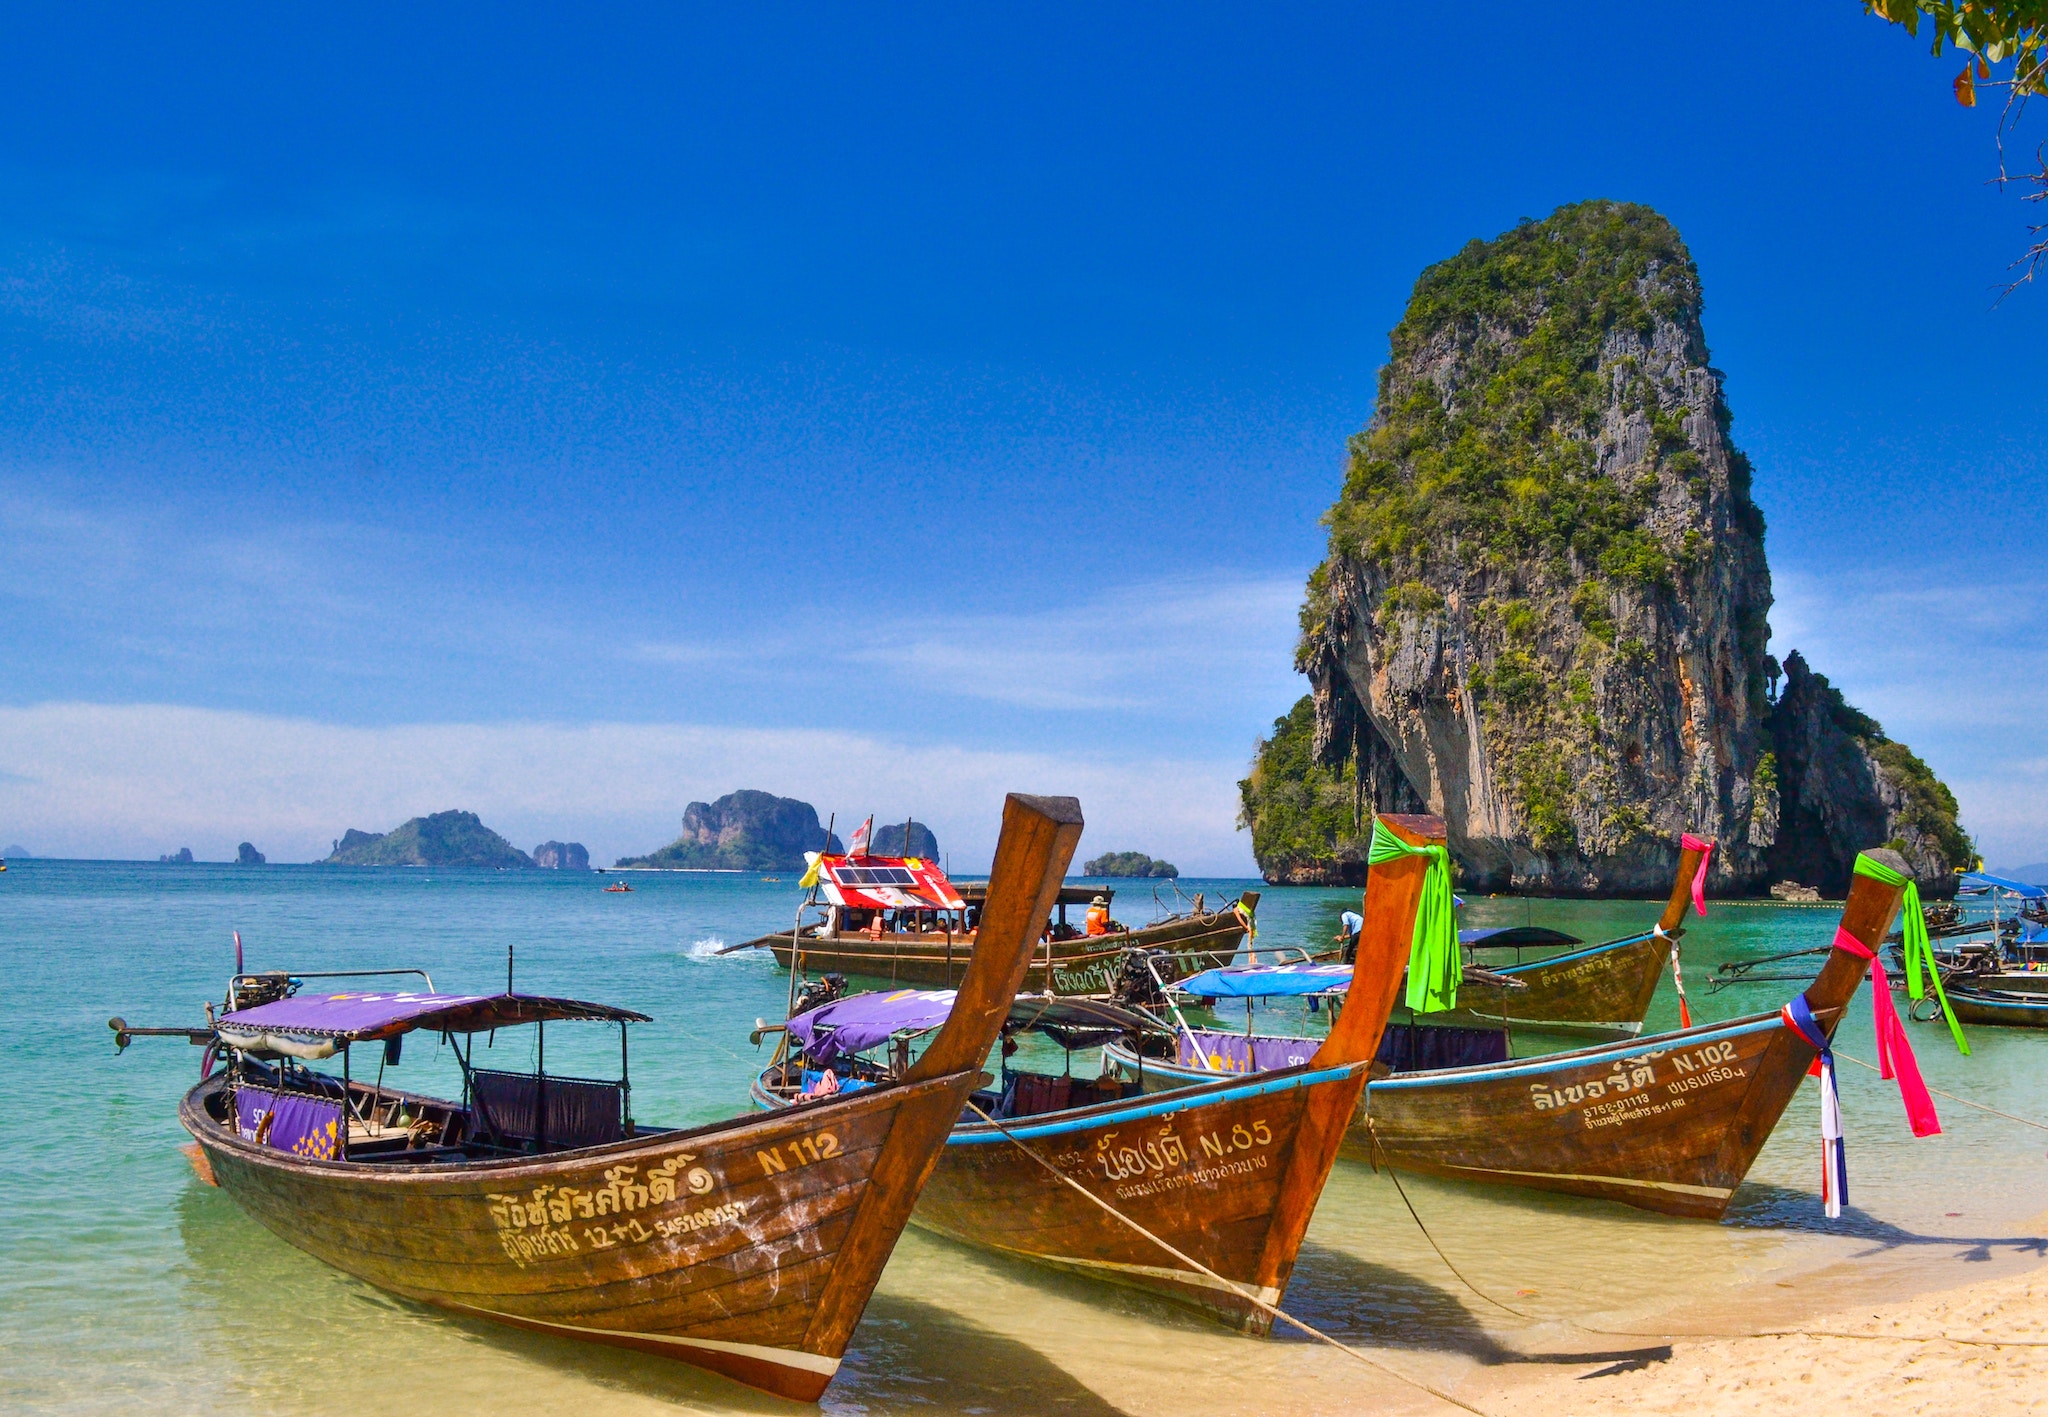 Reiseziele im November: In Thailand endet im November der Monsun und die Sonne lässt sich immer öfter blicken – ideale Vorraussetzungen für alle, die im Spätherbst noch sonnen und baden möchten. Foto: Unsplash